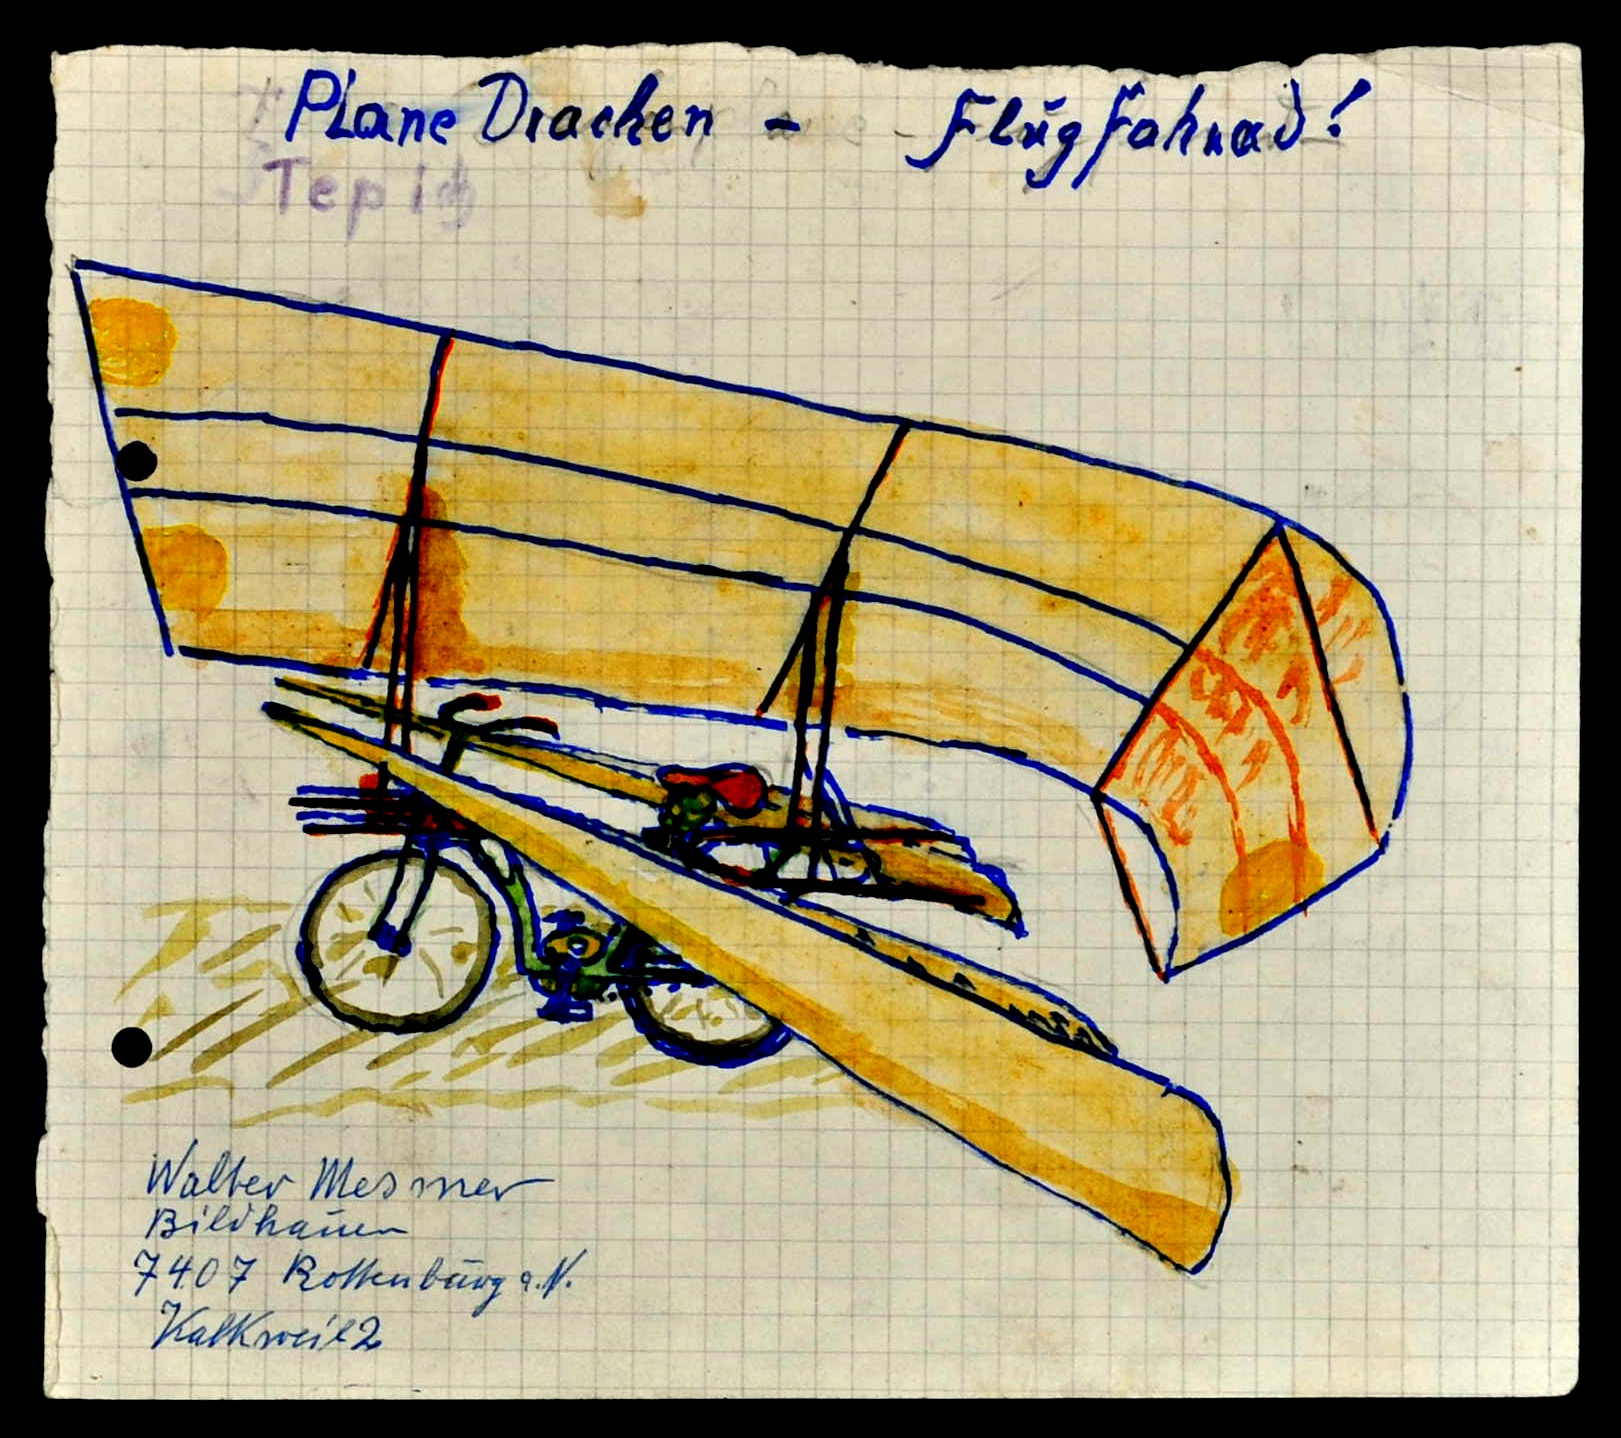 "Plane Drachen - Flug Fahrad!" ; "Propeller Antrieb für Flugrad" (Gustav Mesmer Stiftung CC BY-NC-SA)